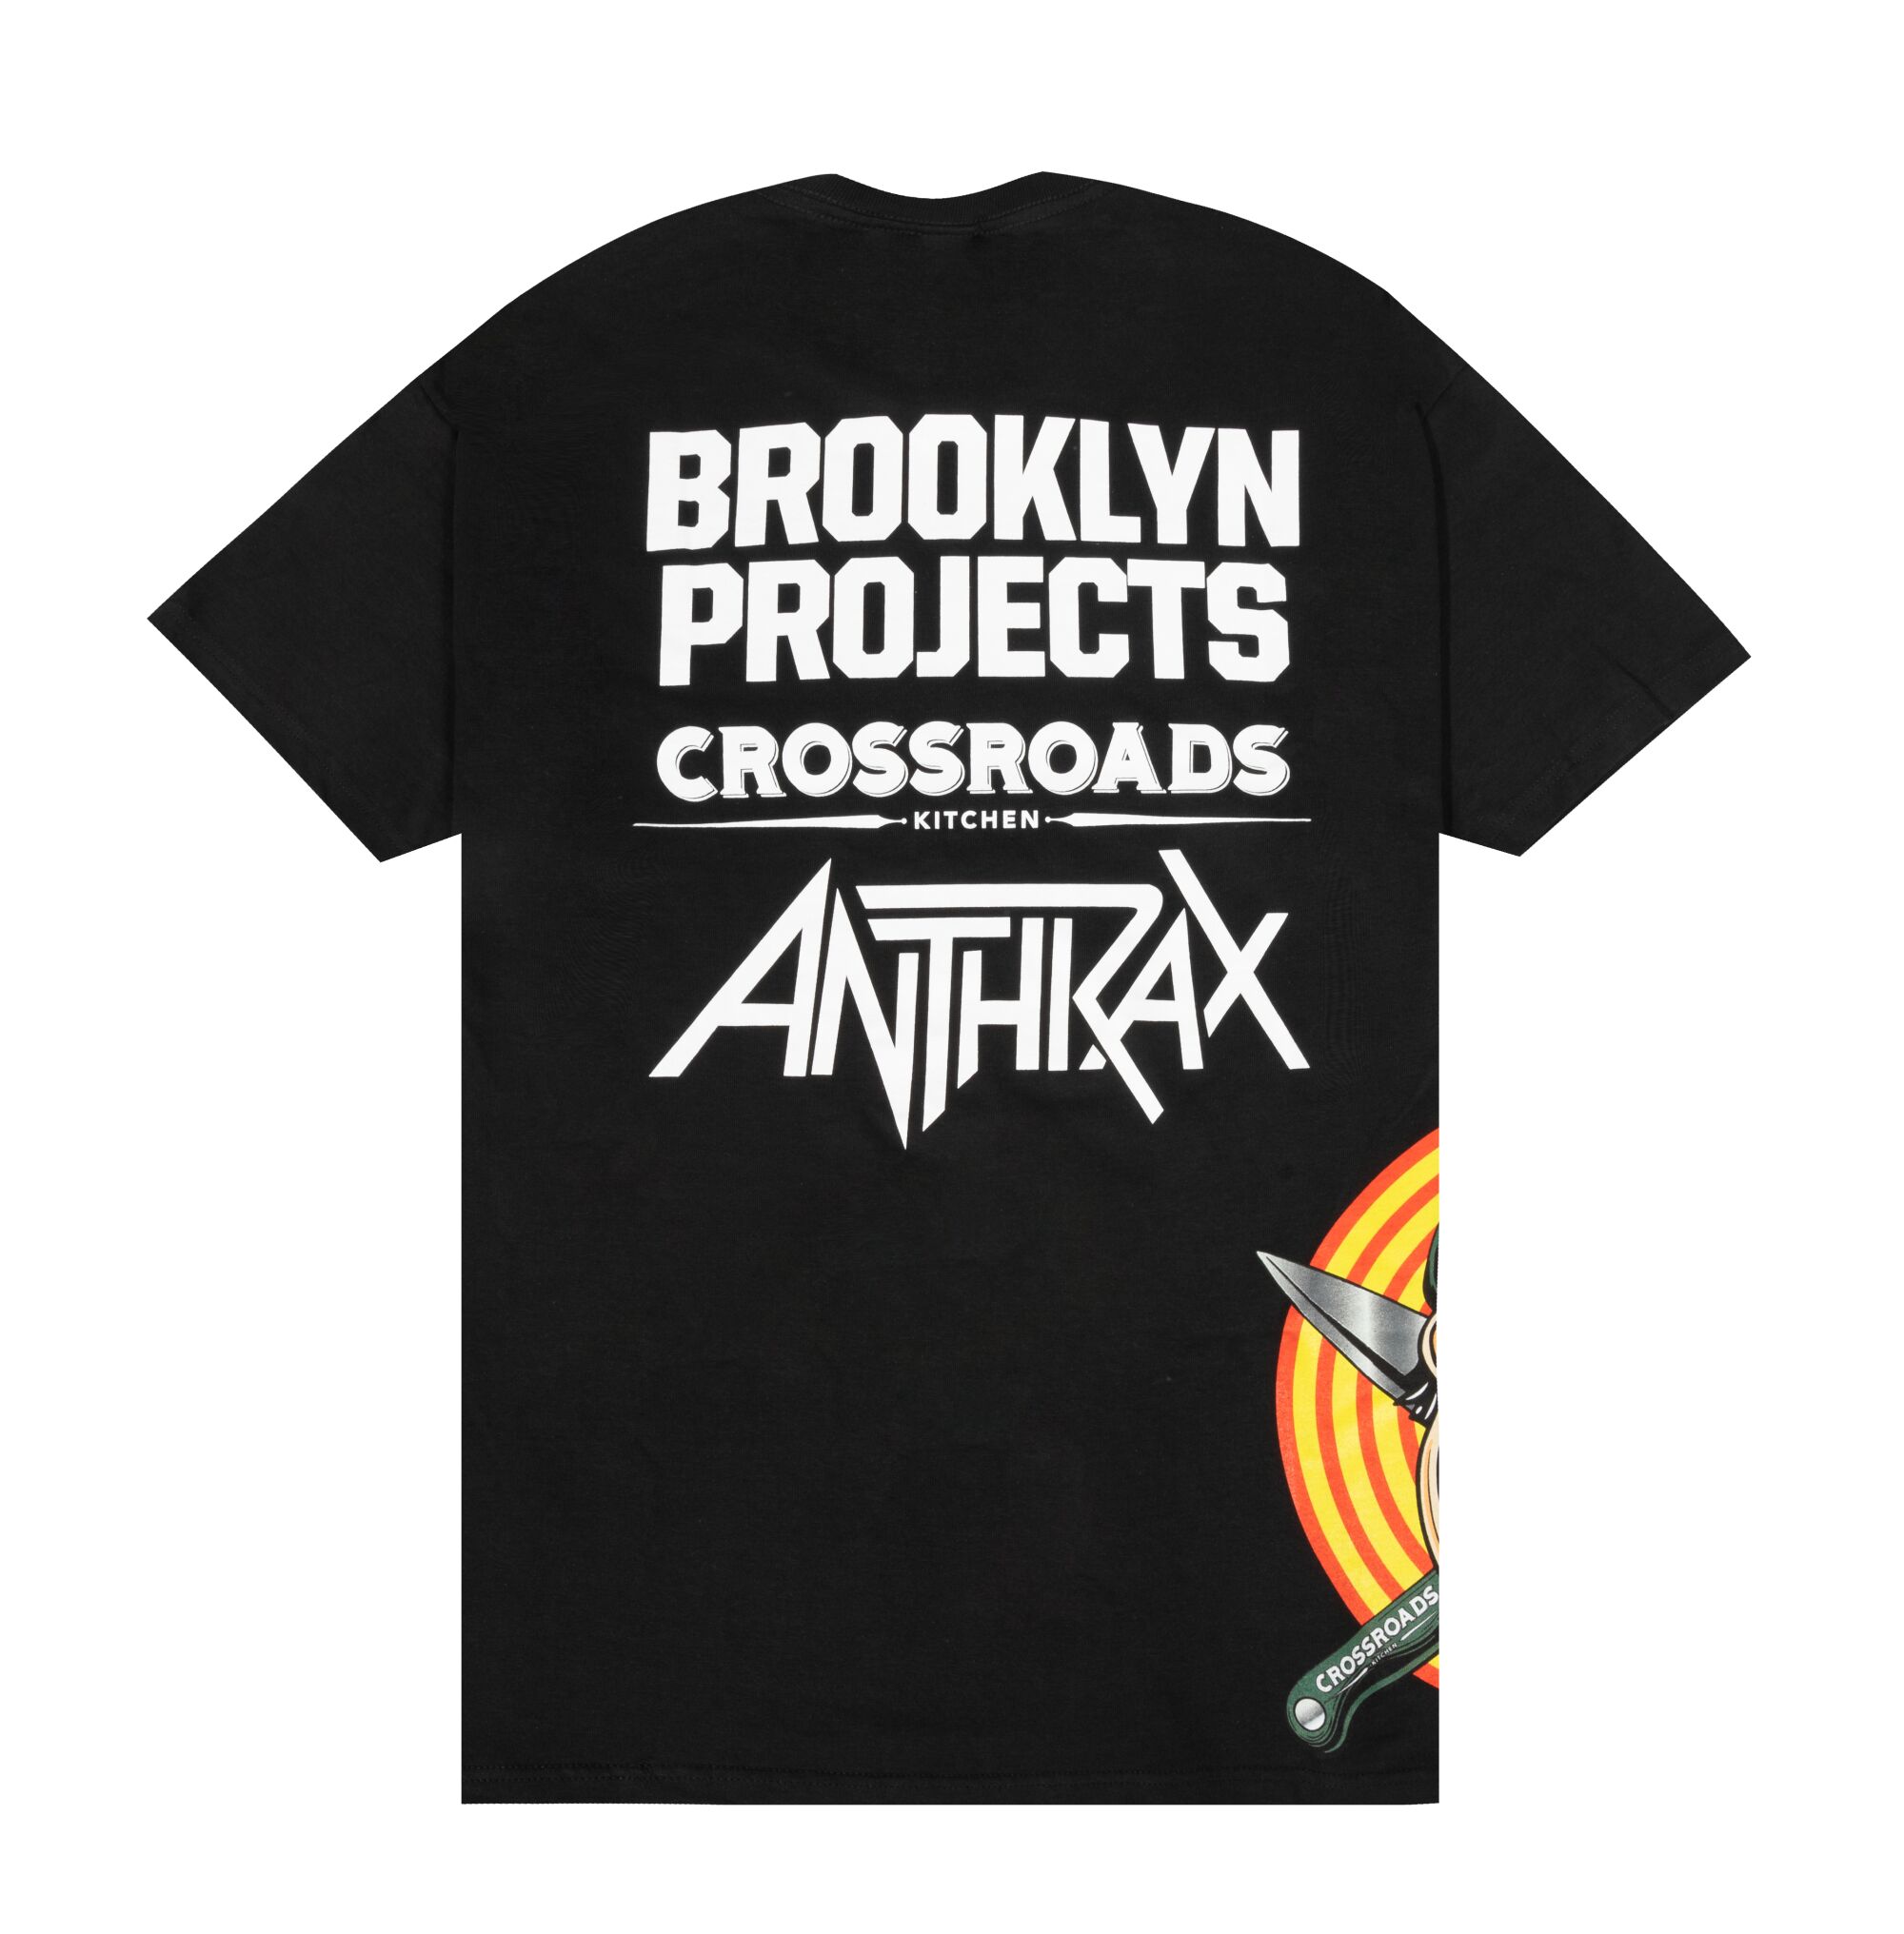 Crossroads Kitchen X Brooklyn Projects X Anthrax black T-shirt